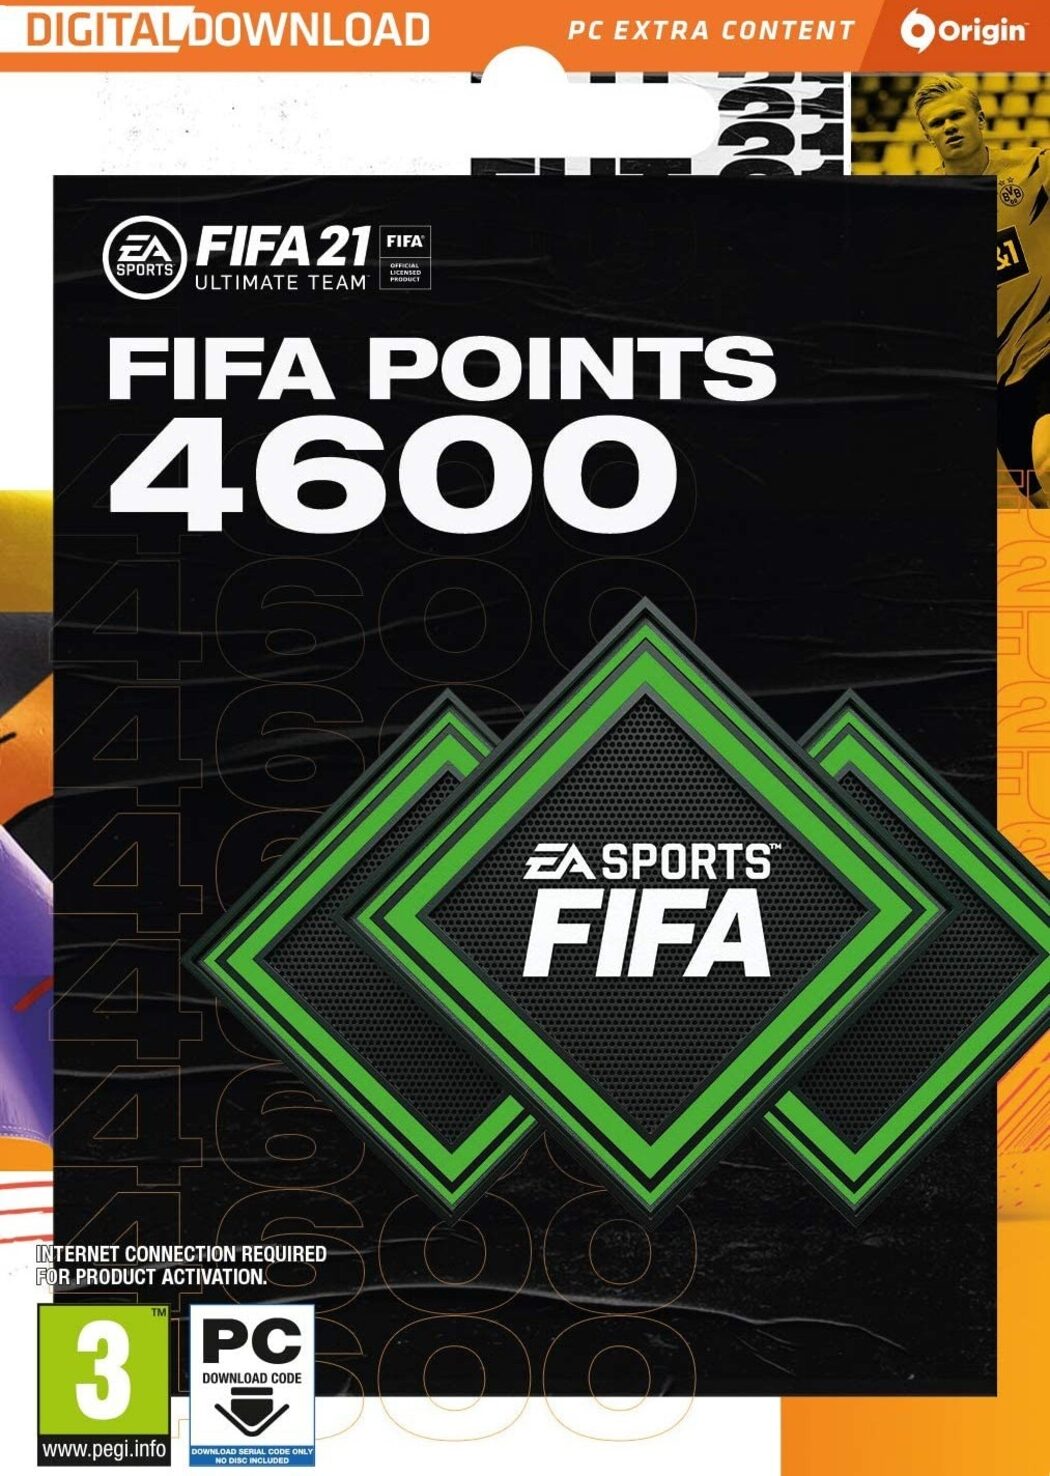 FIFA 23 : 1600 FIFA Points (PC)